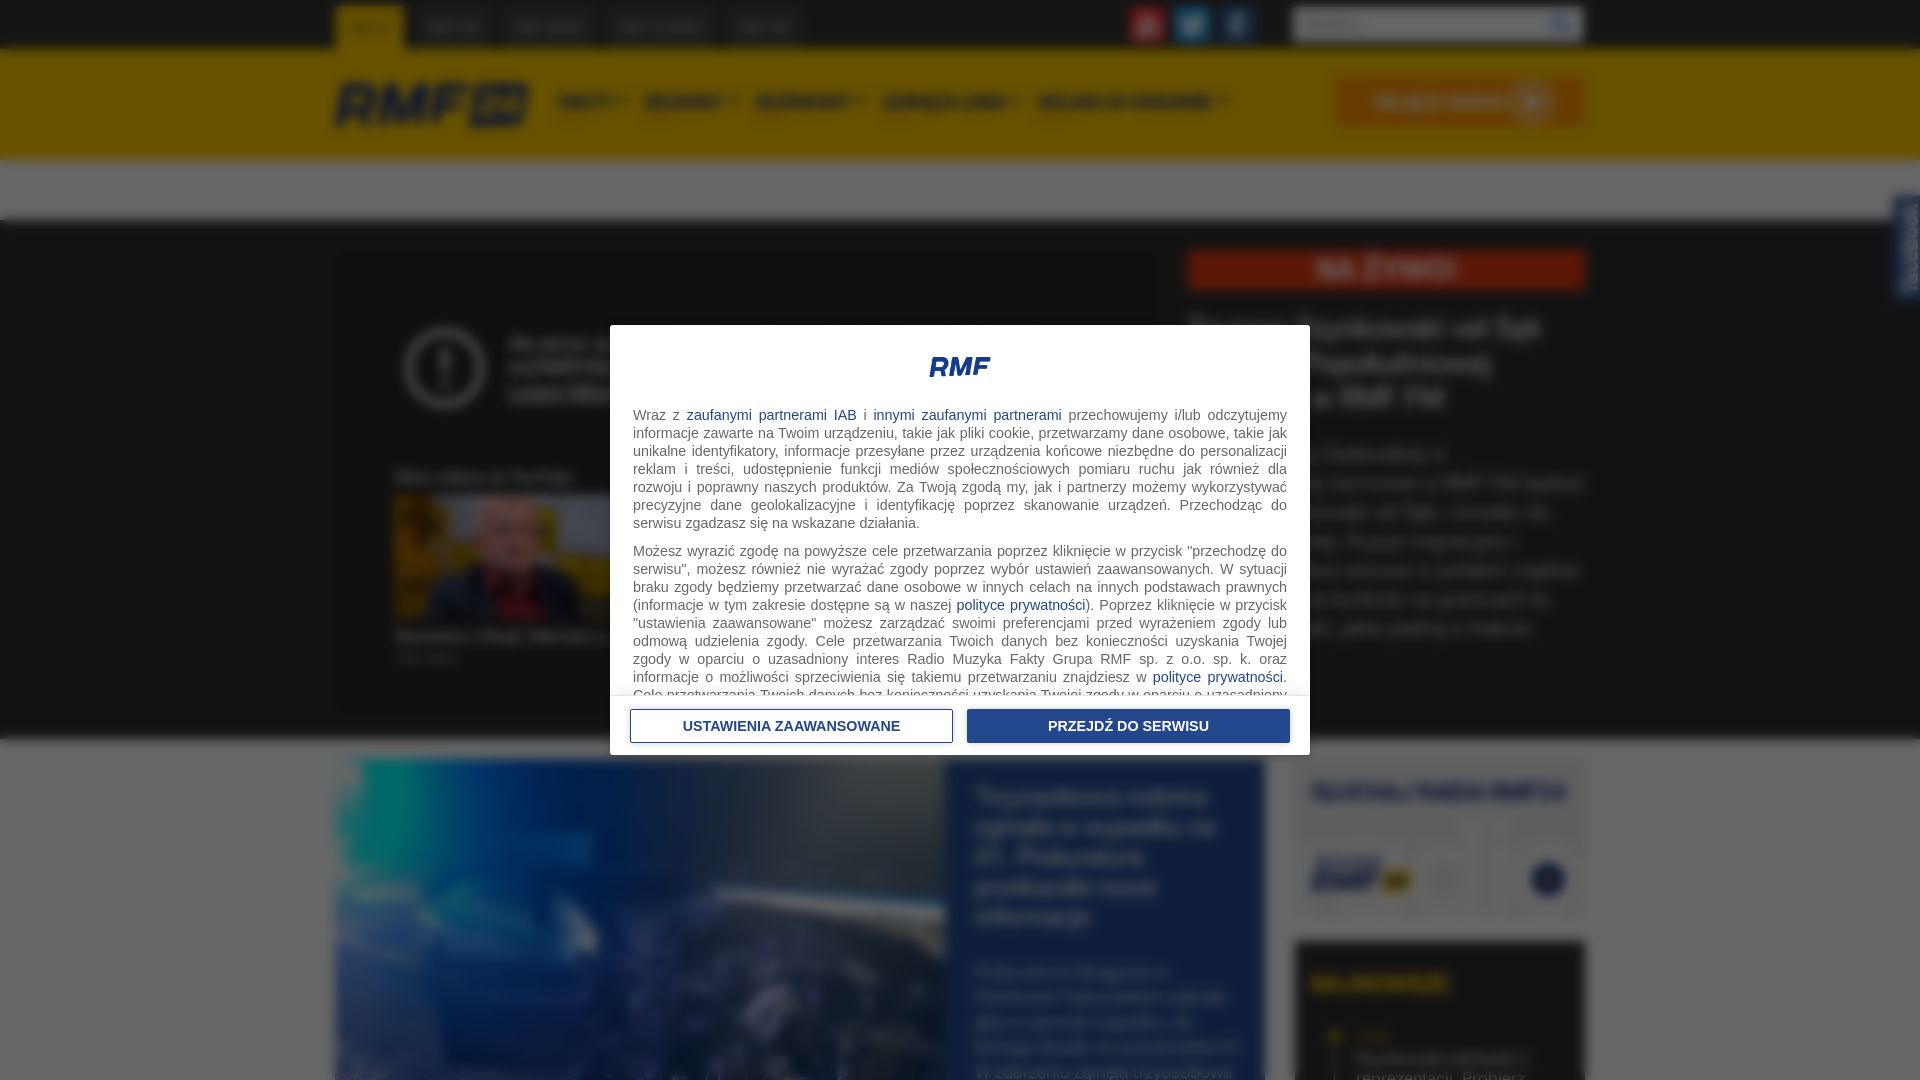 Status do site rmf24.pl está   ONLINE